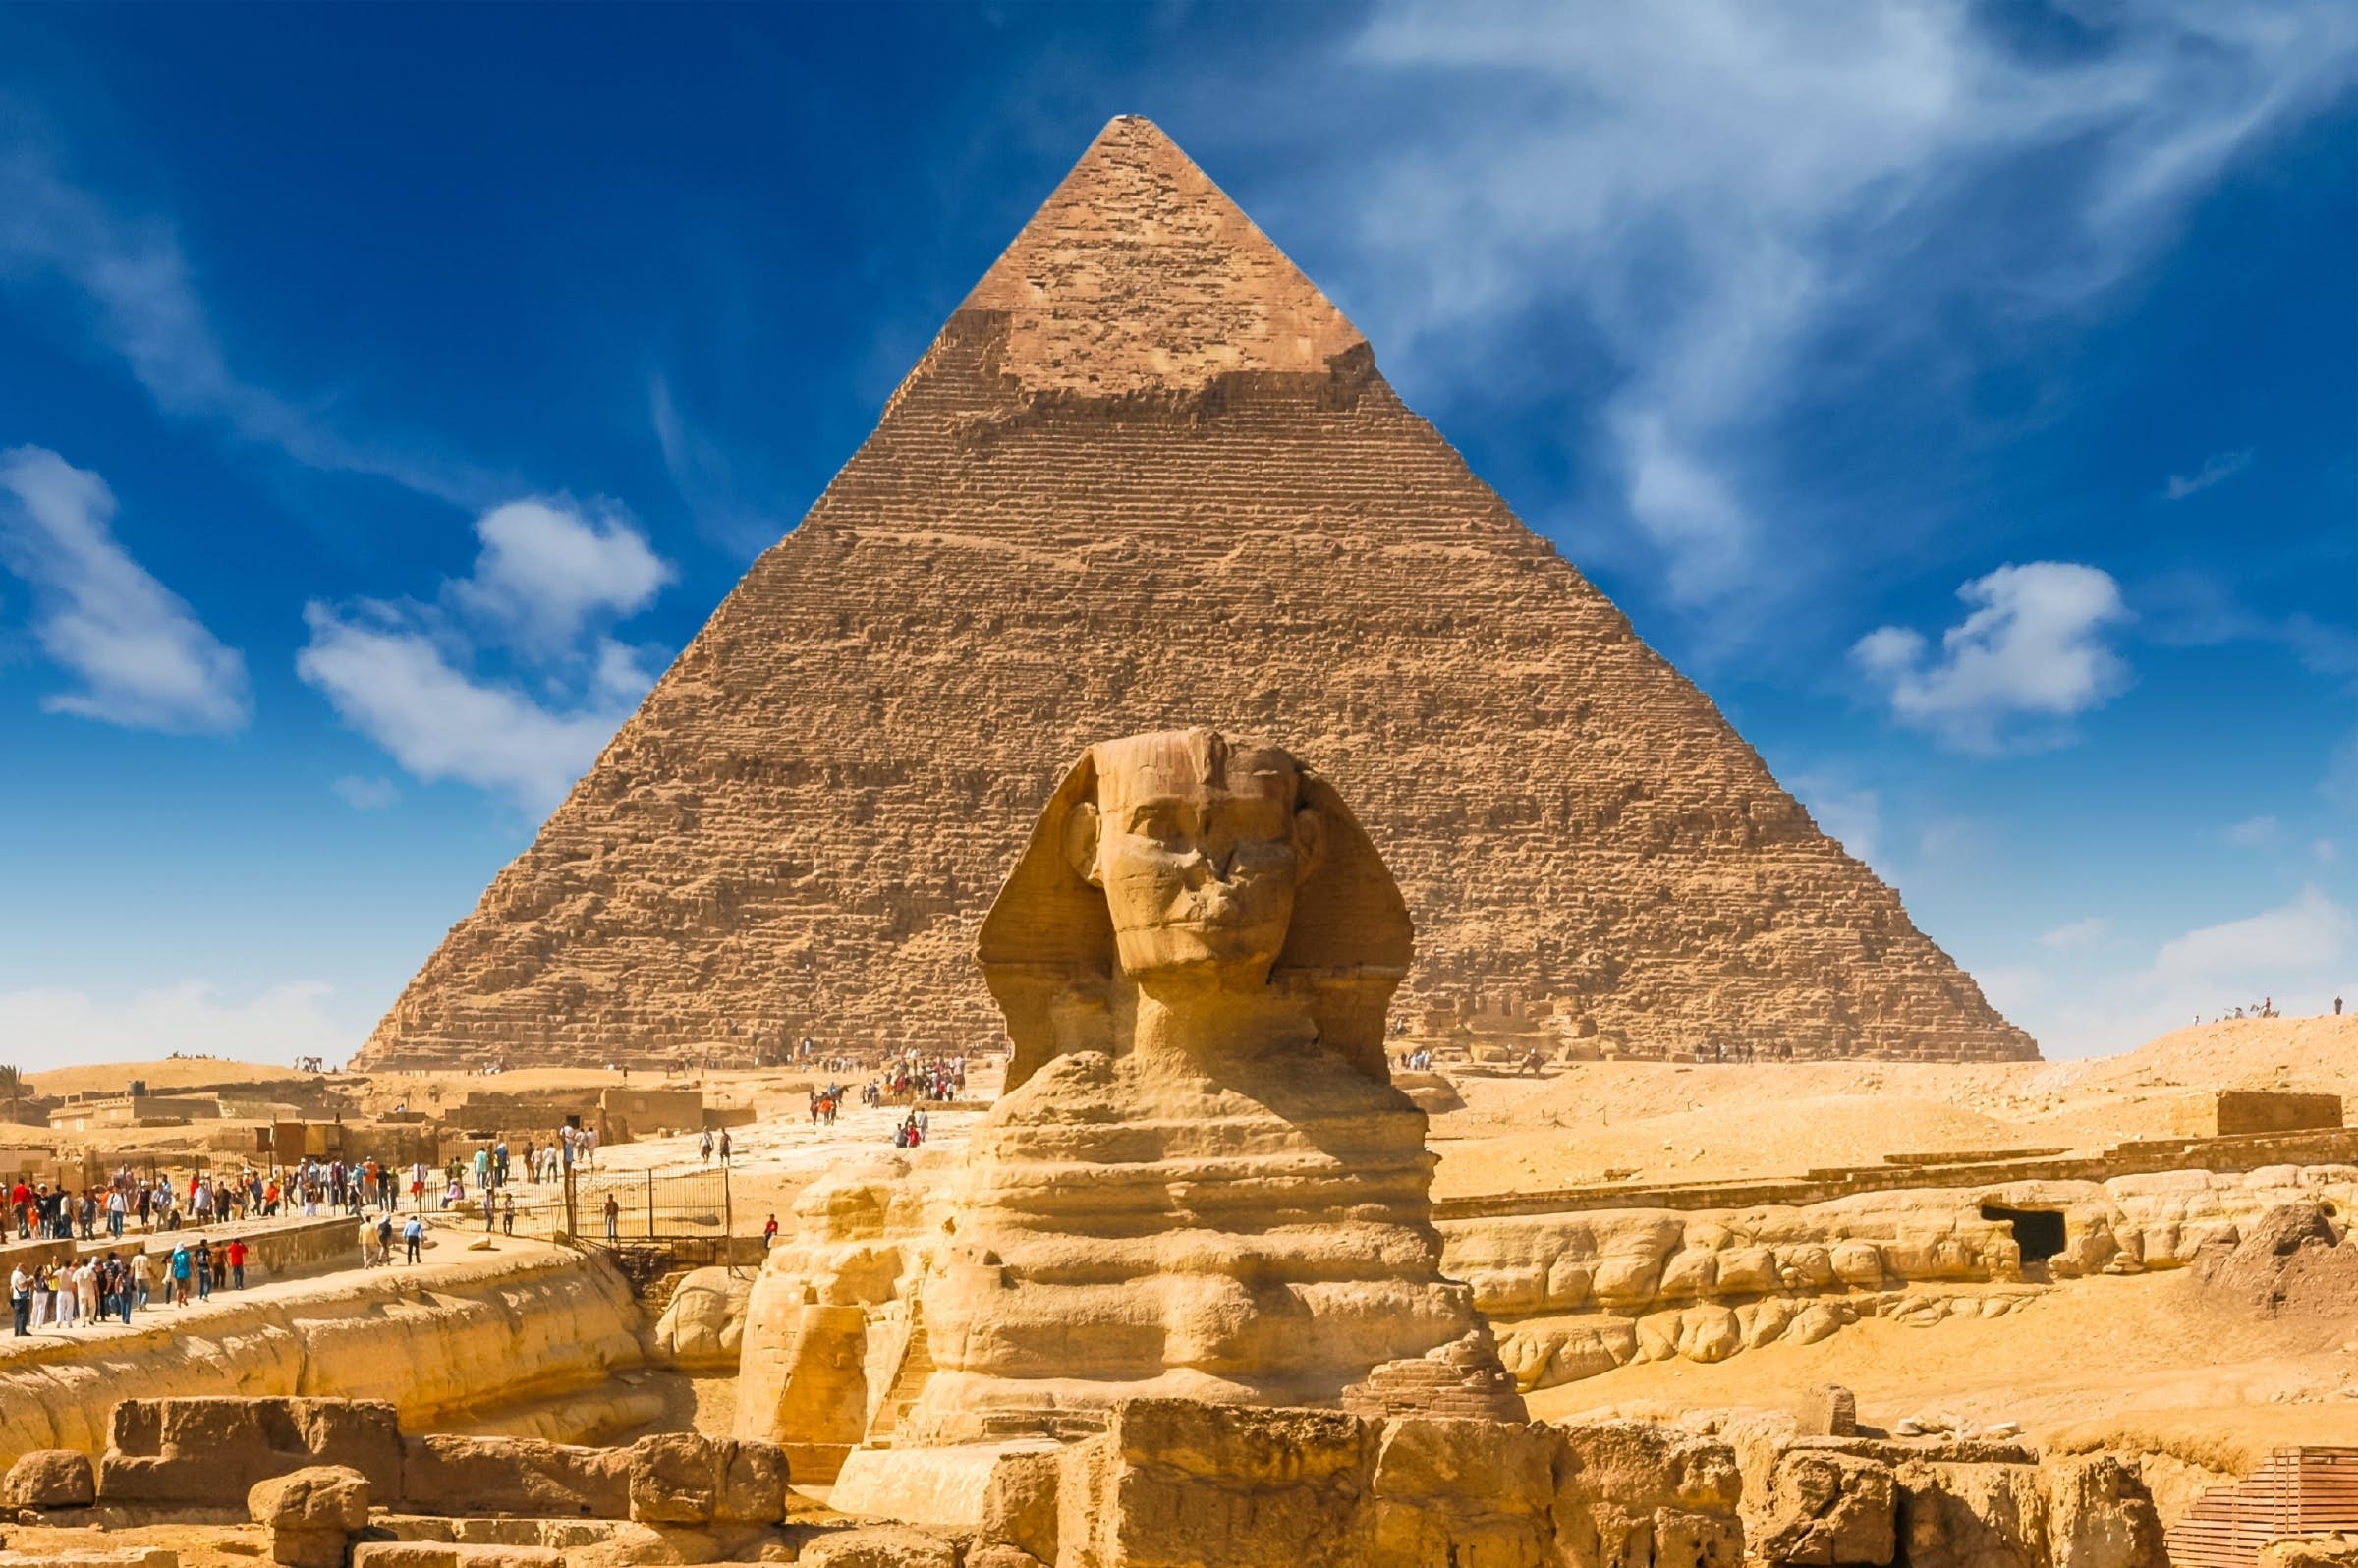 The Great Pyramids & Sphinx - Giza